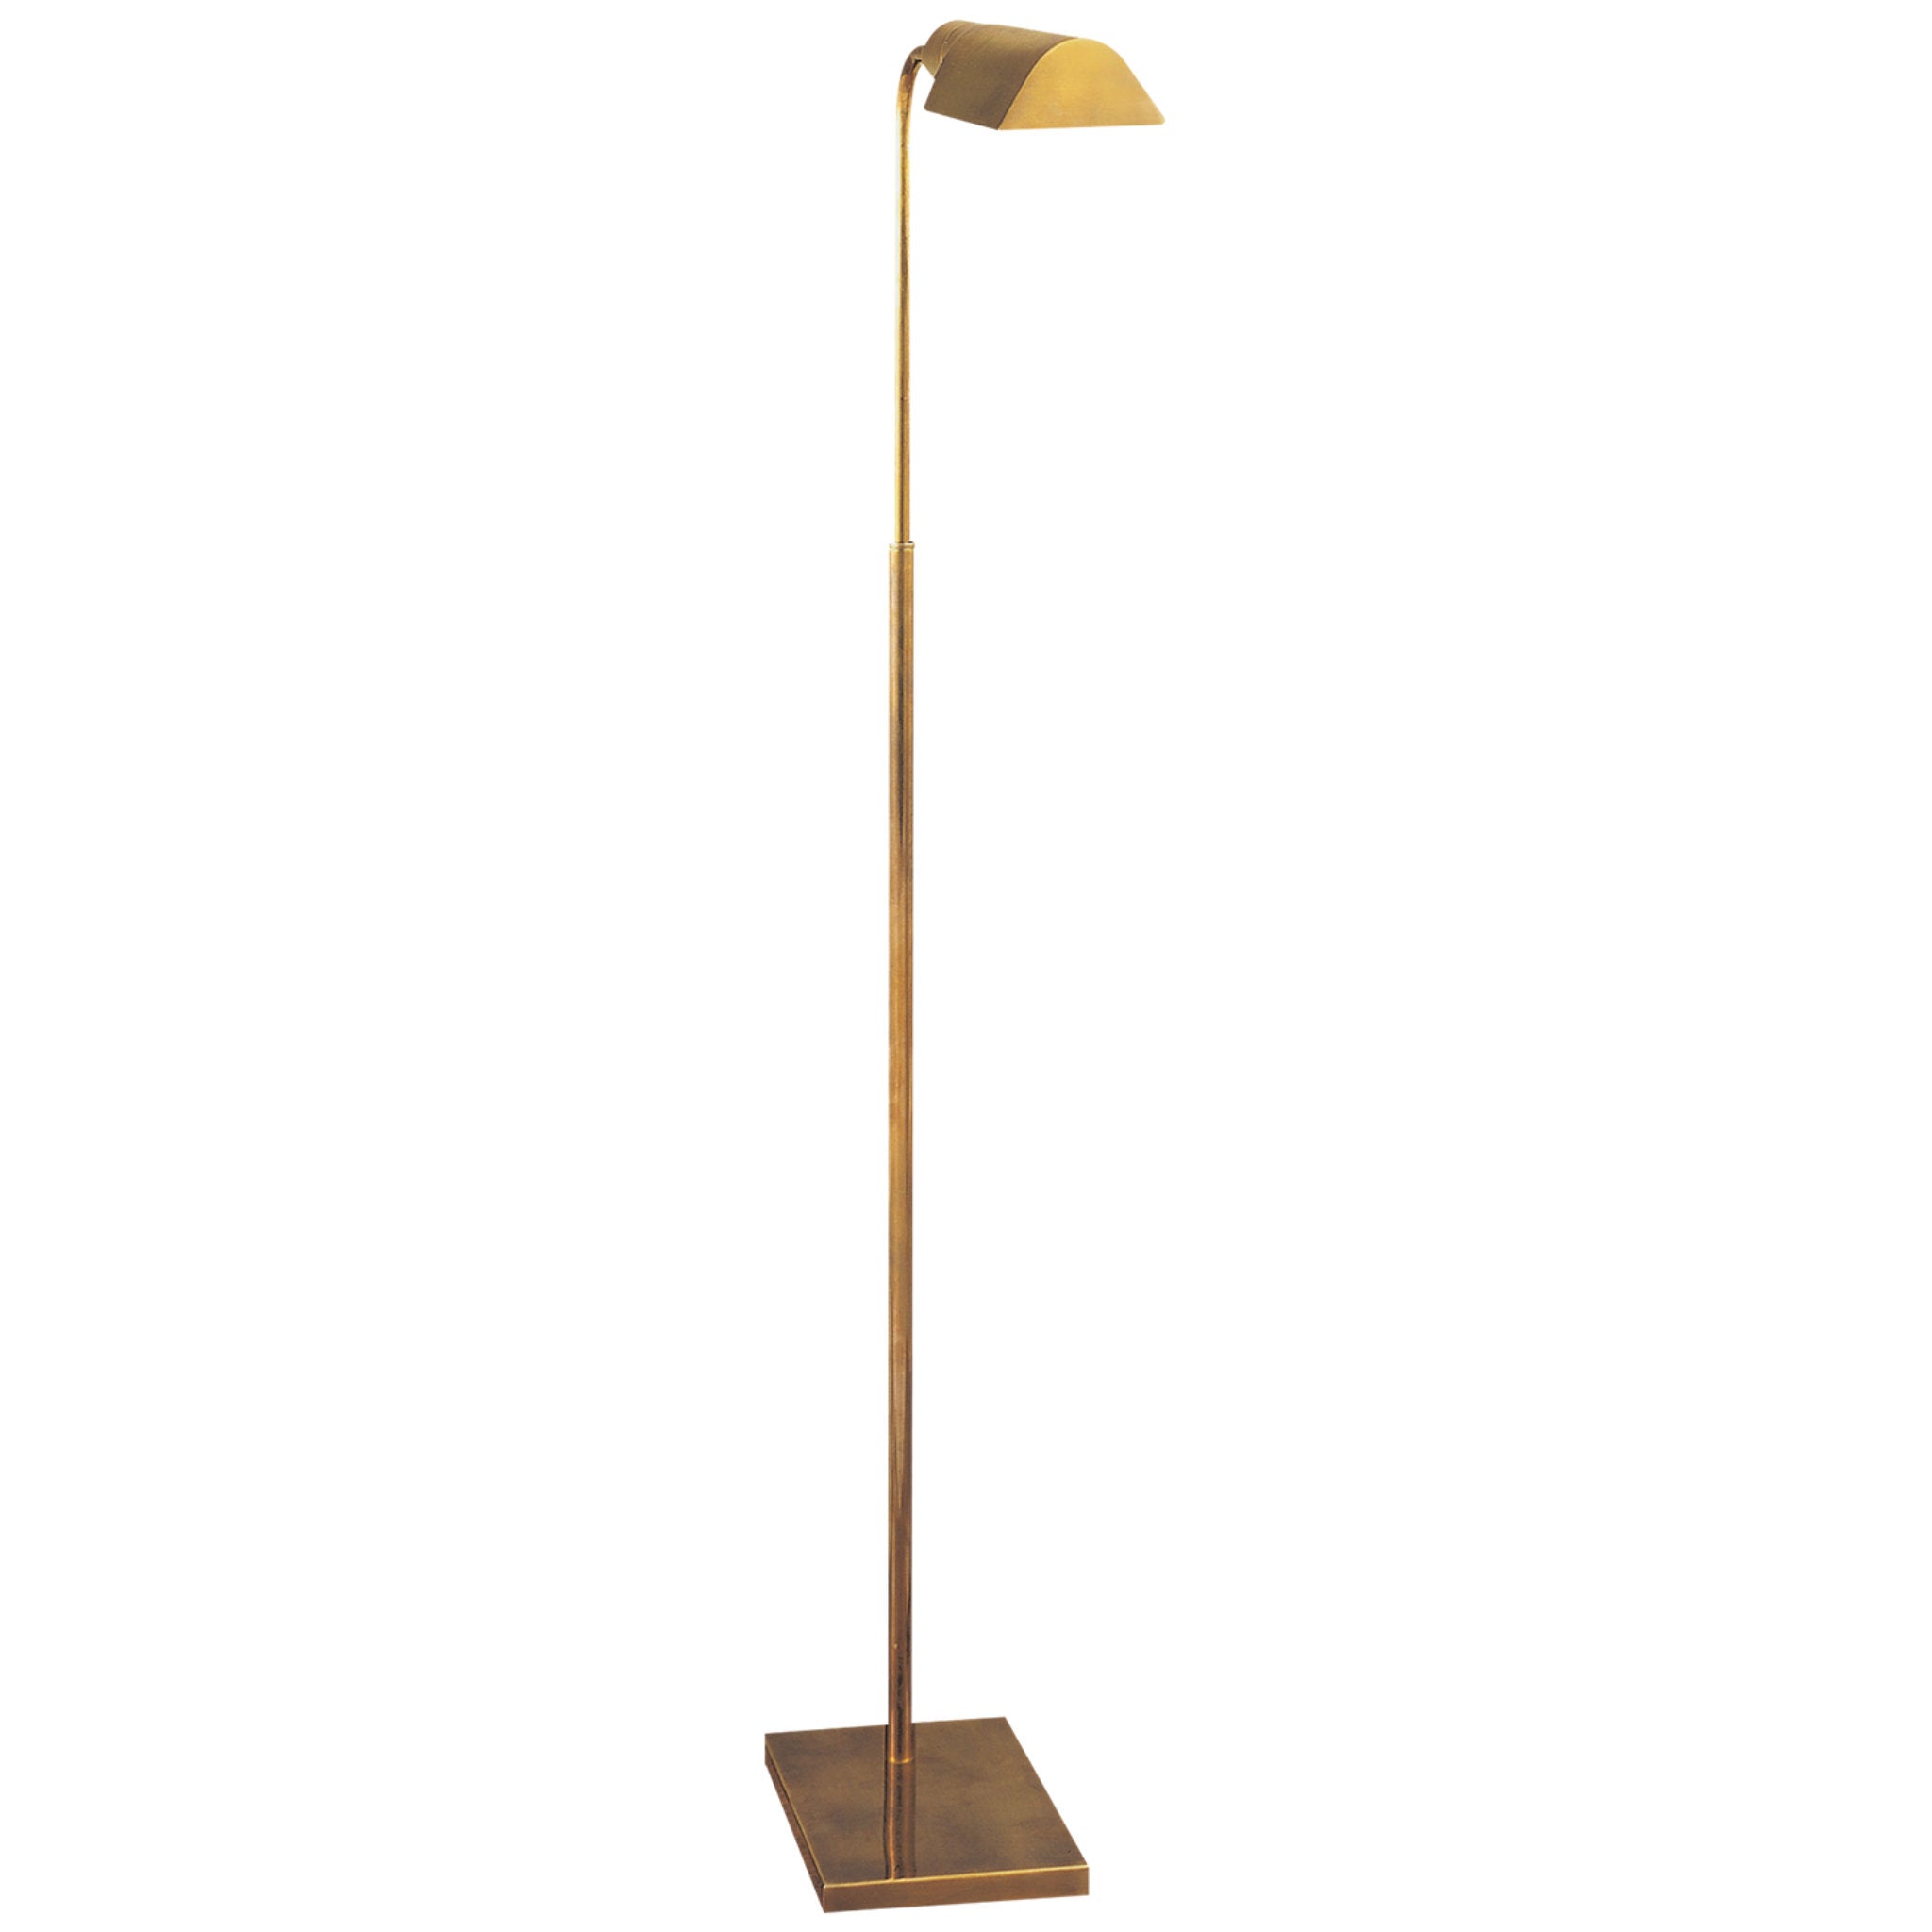 Visual Comfort Studio Adjustable Floor Lamp in Hand-Rubbed Antique Brass